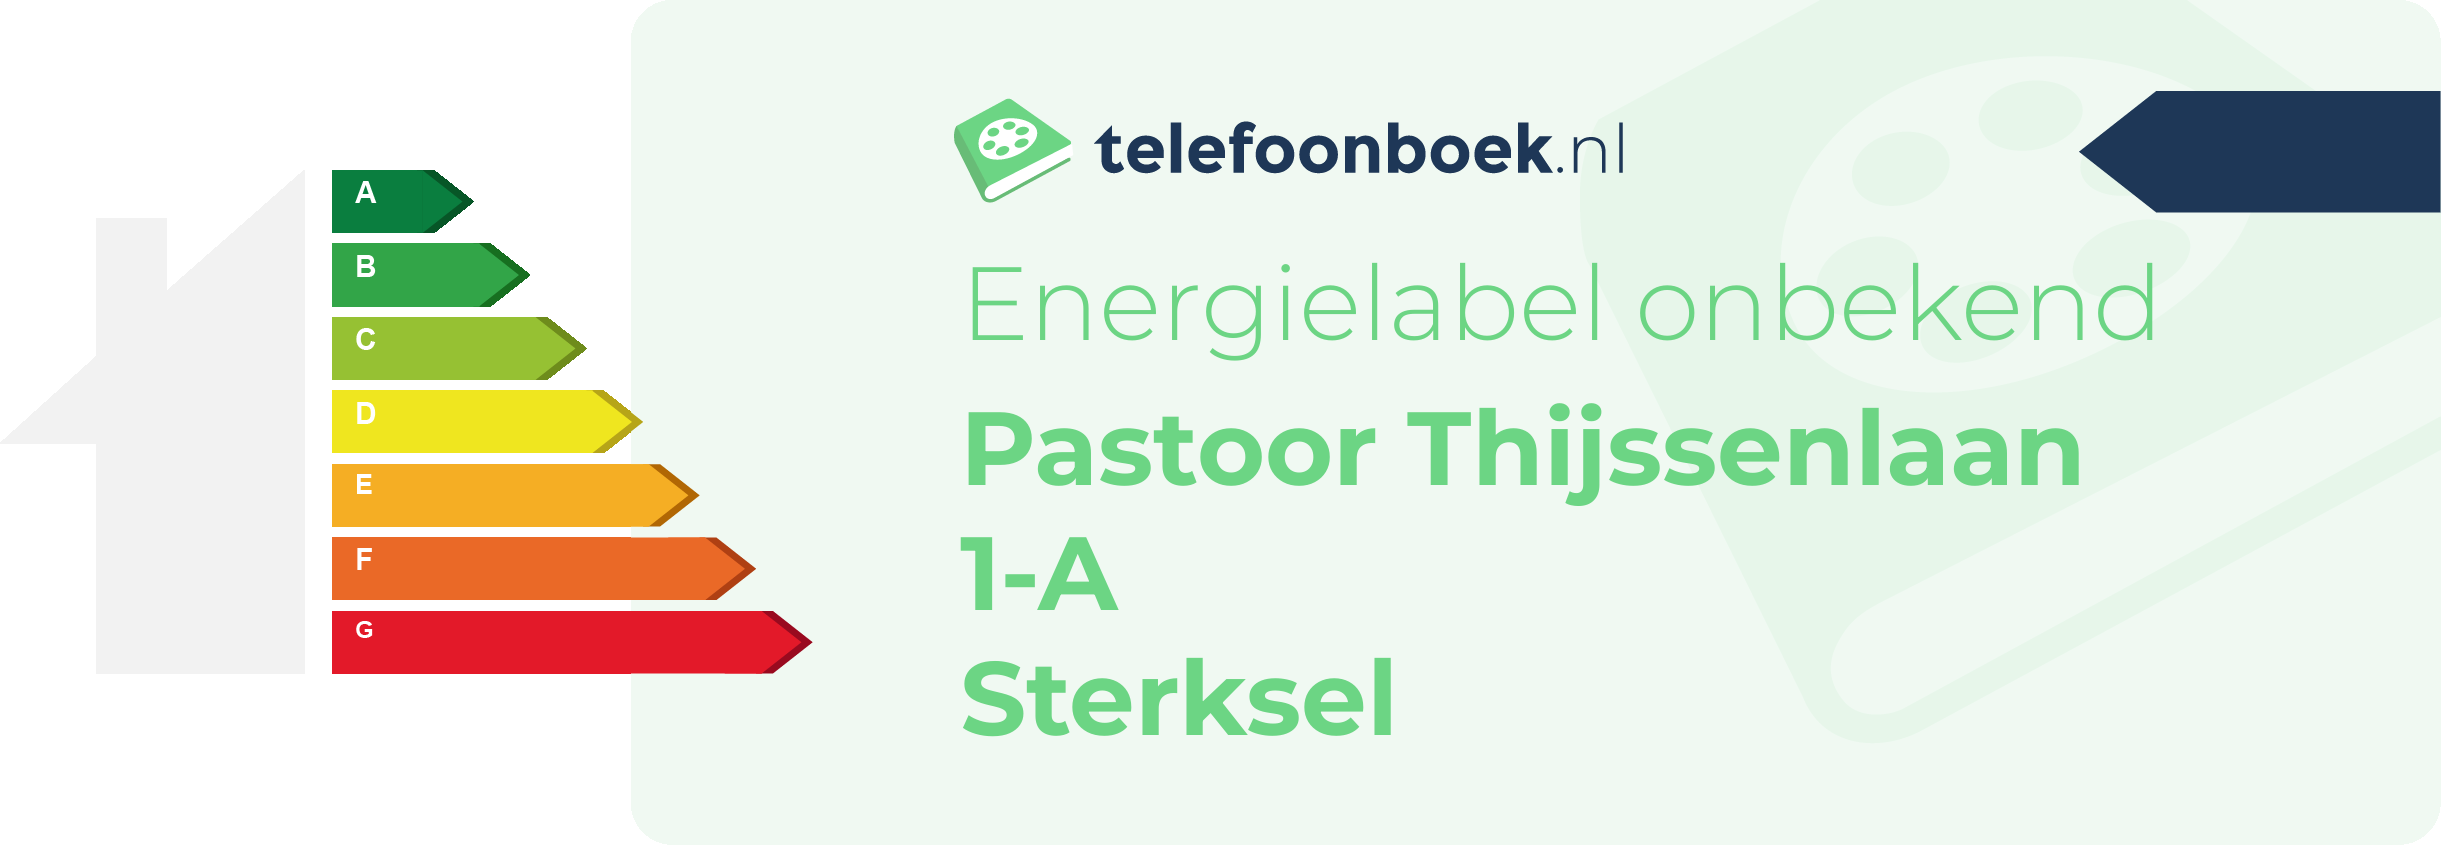 Energielabel Pastoor Thijssenlaan 1-A Sterksel